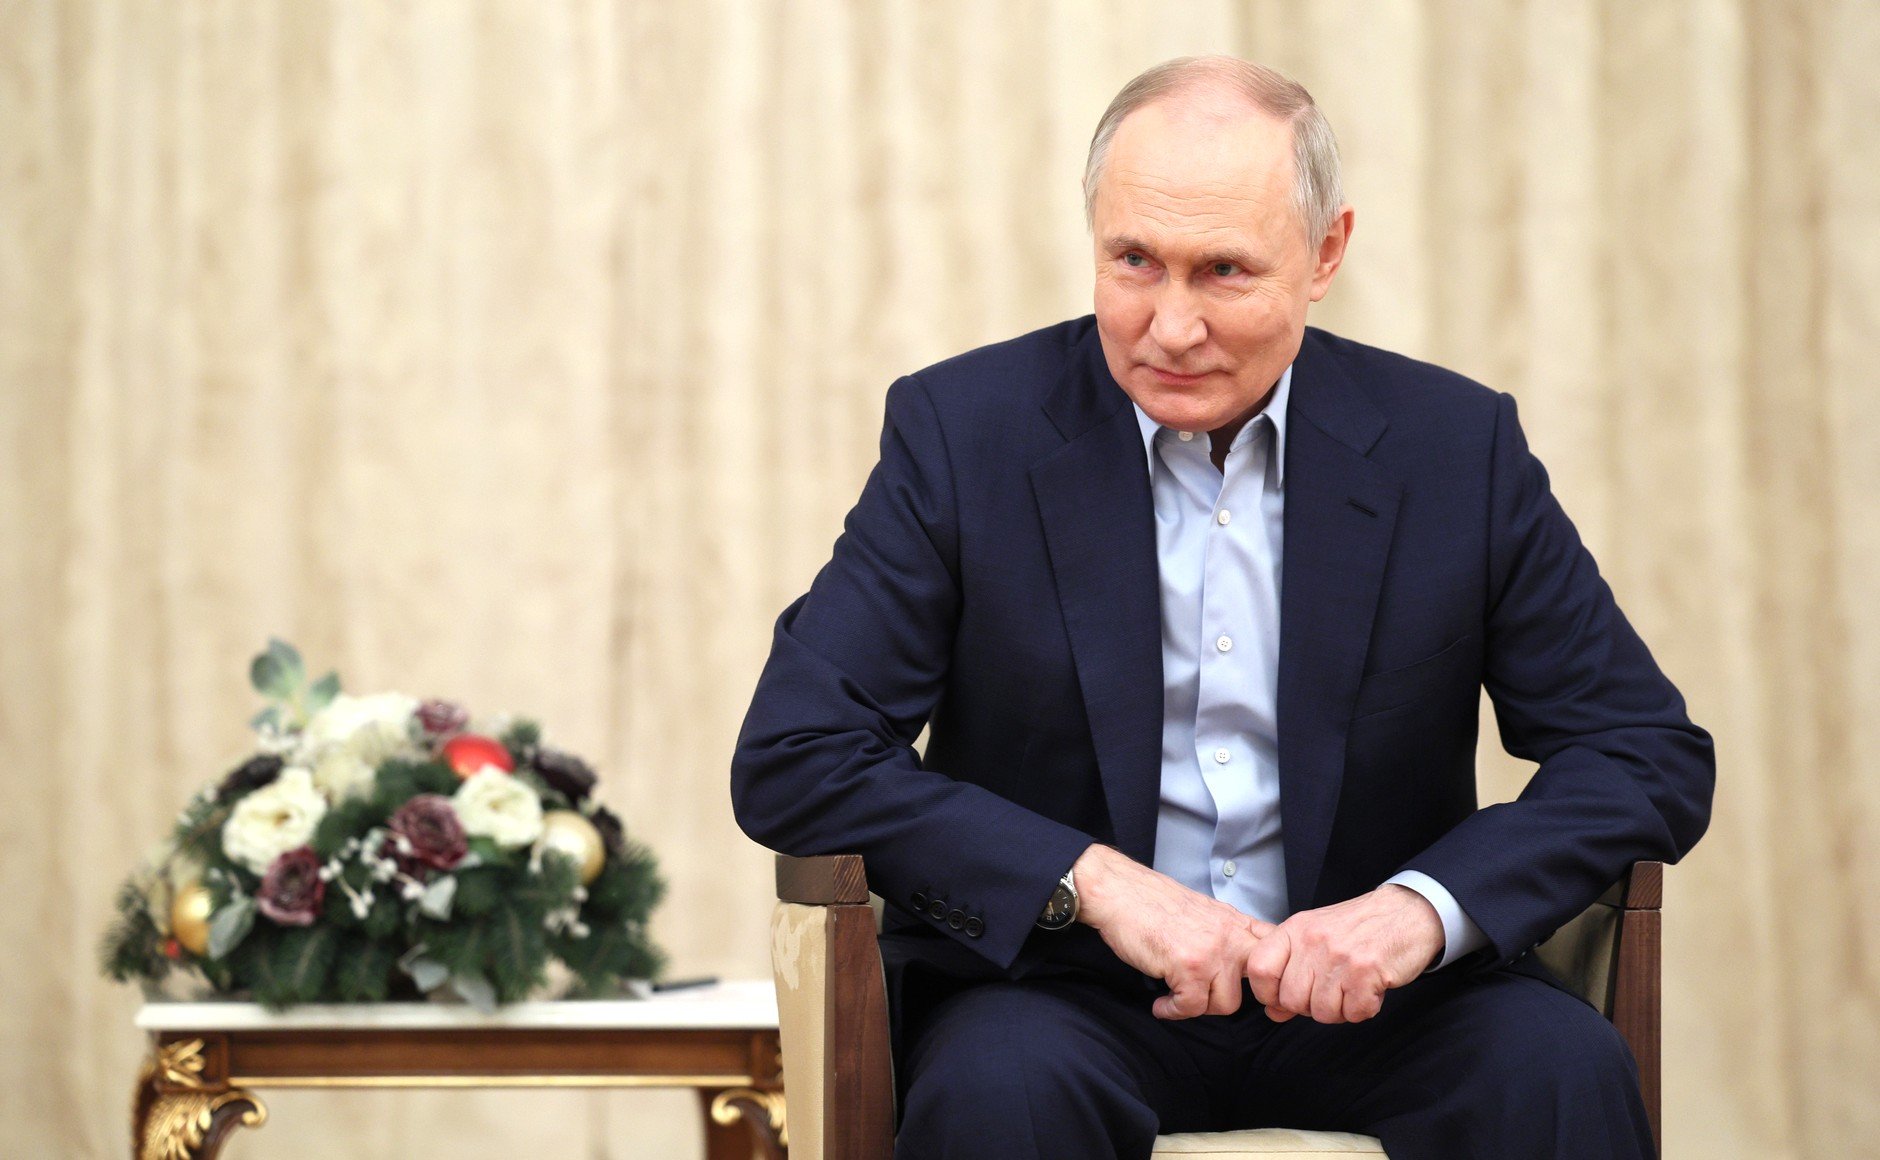 ТВ-рейтинг новогоднего обращения Путина достиг пятилетнего максимума